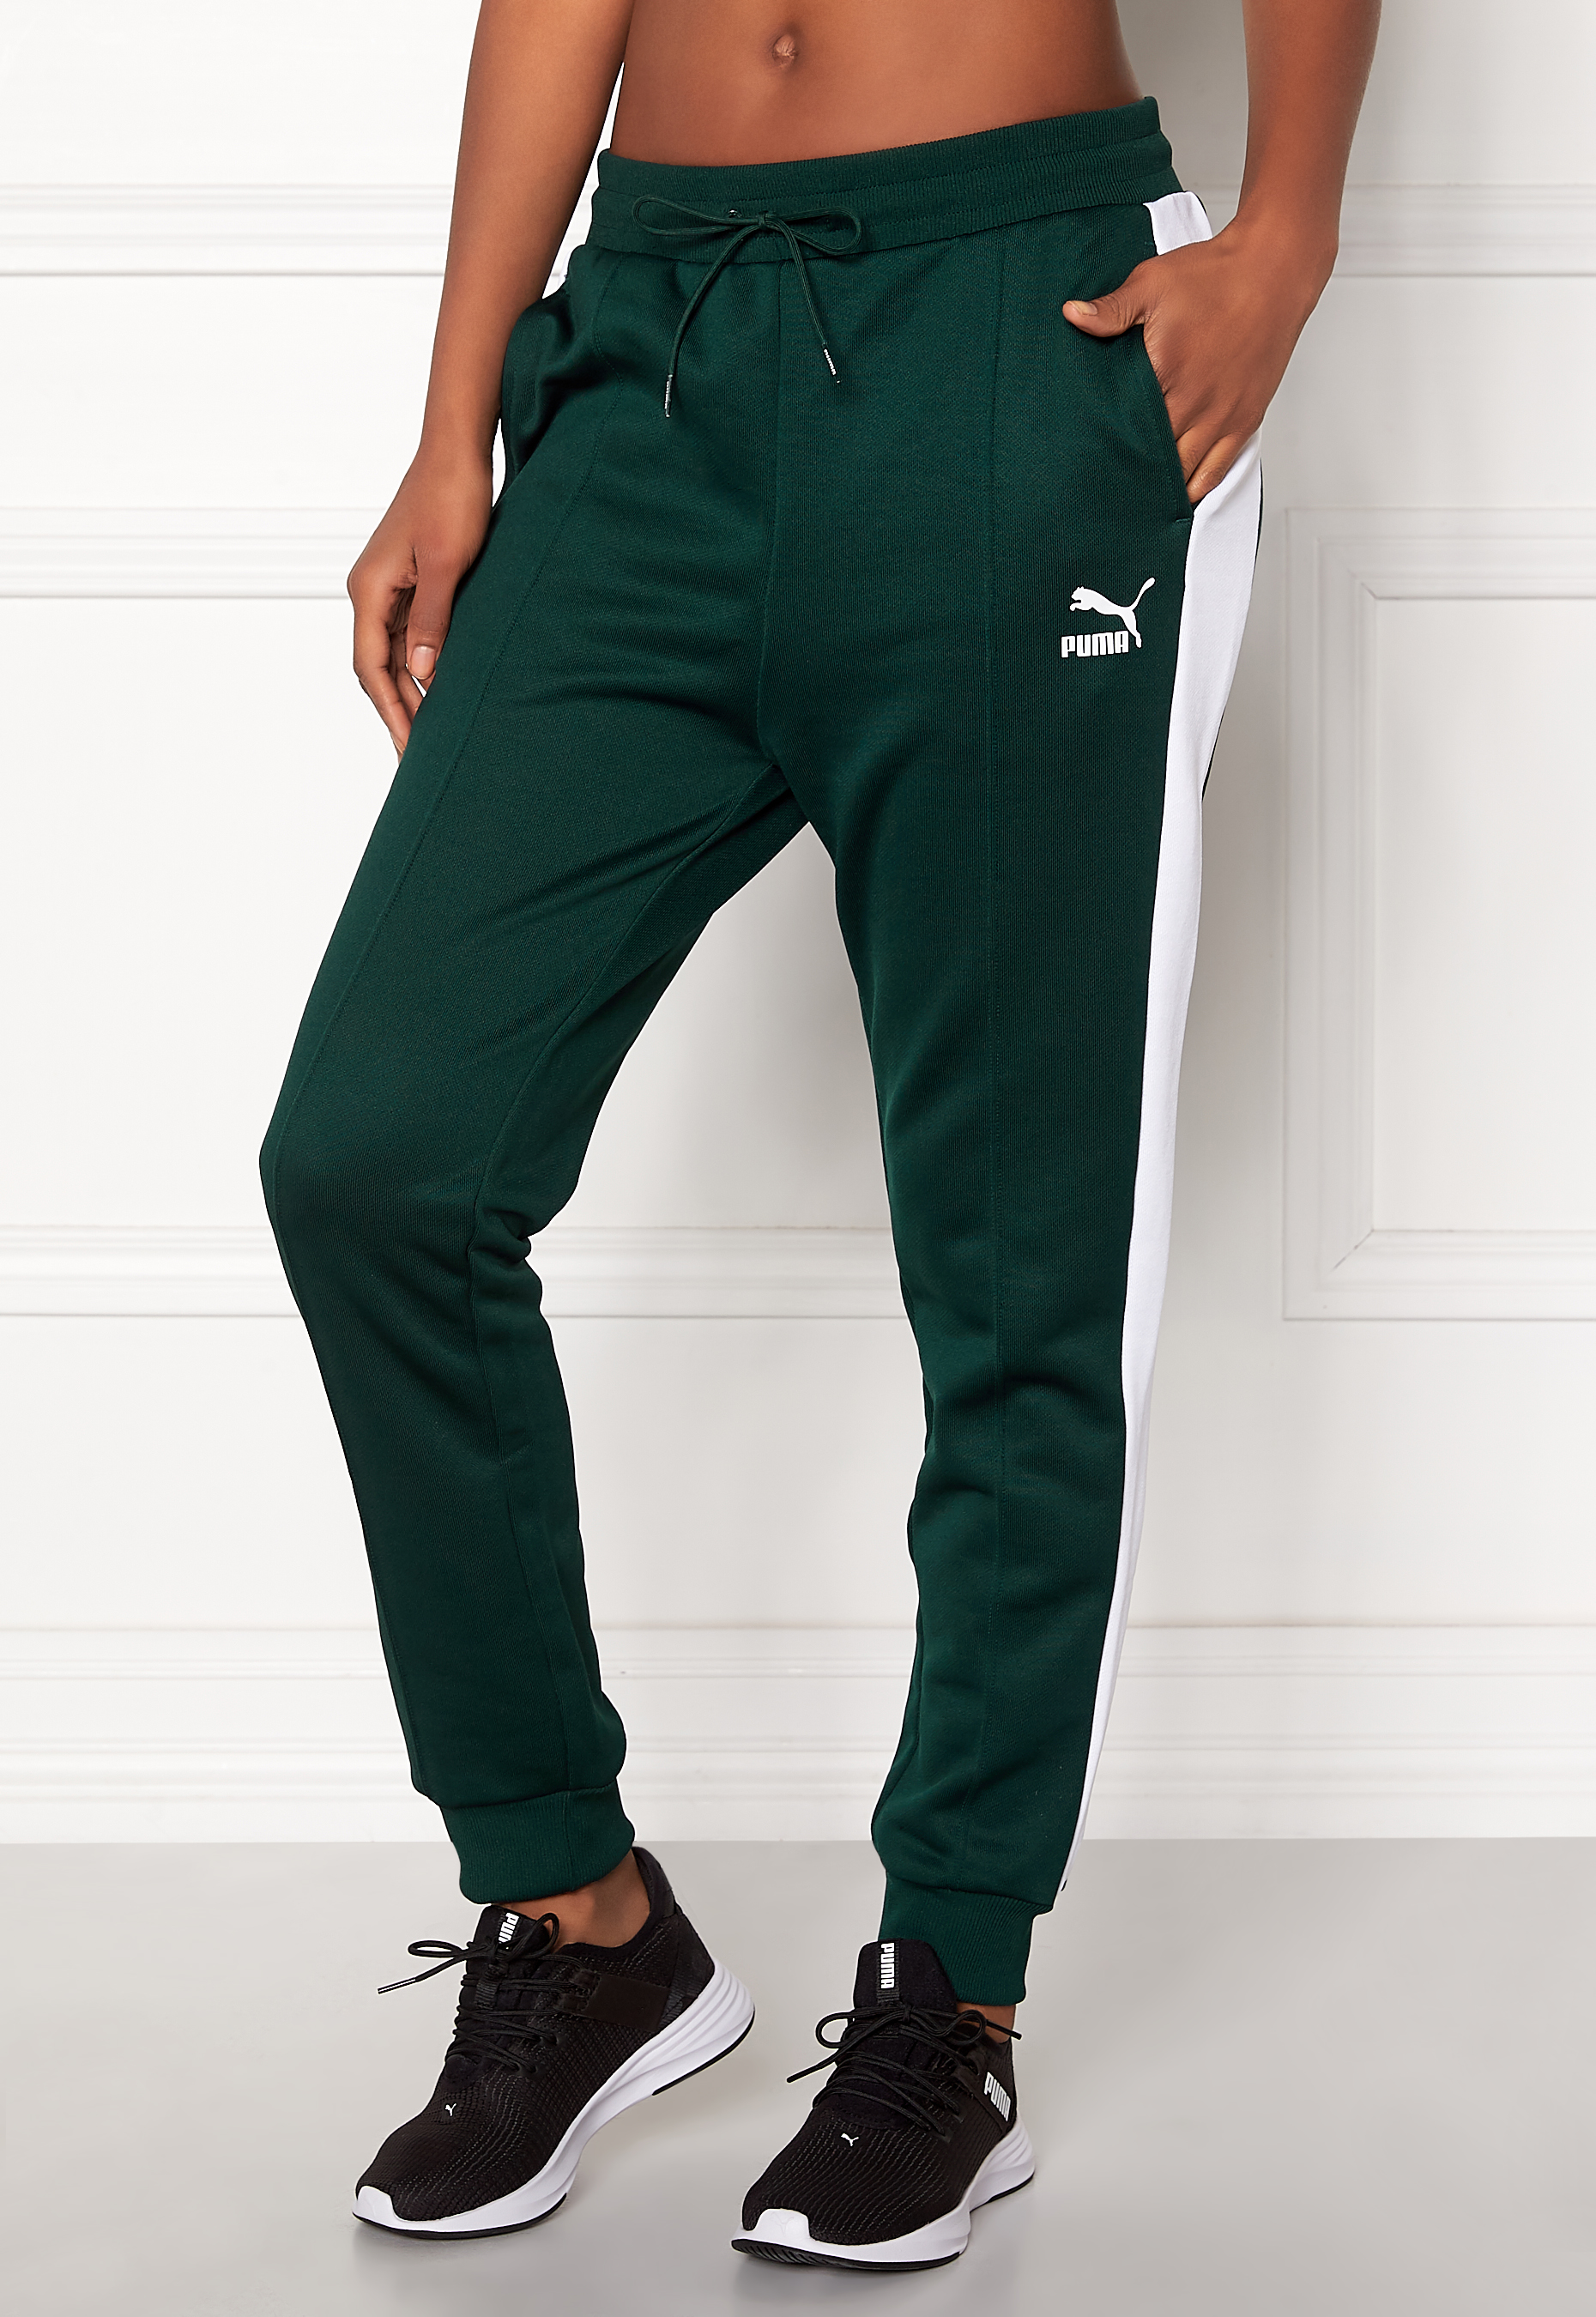 puma green track pants